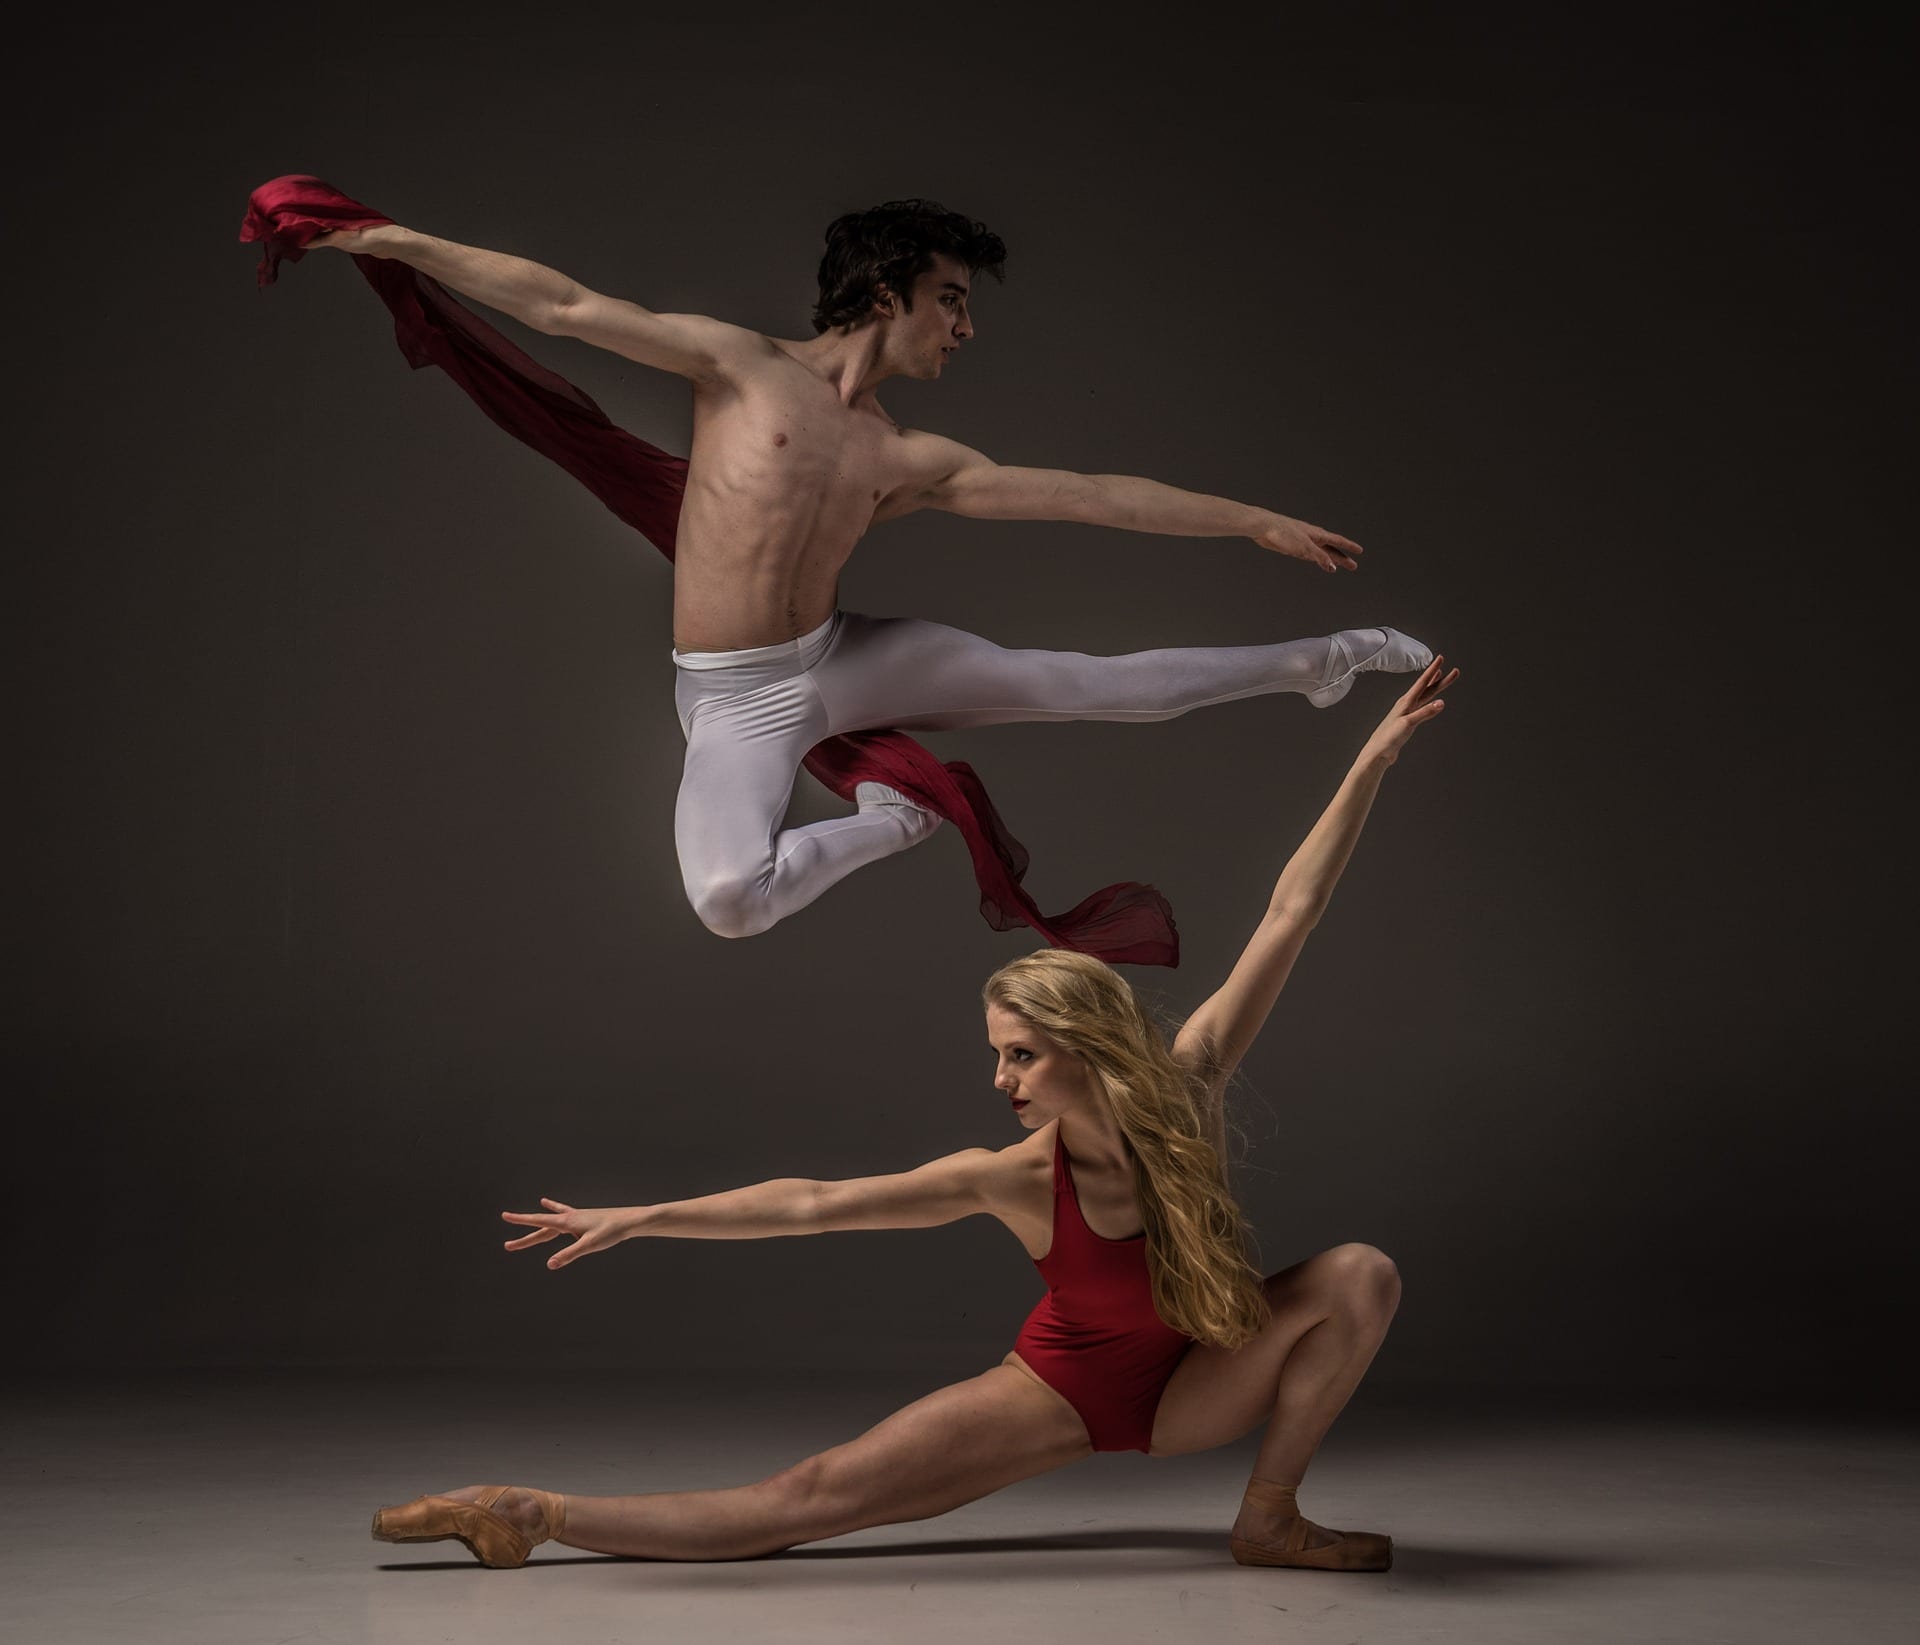 Prestazione Fisica nella Danza: Allenare Forza, Velocità e Potenza